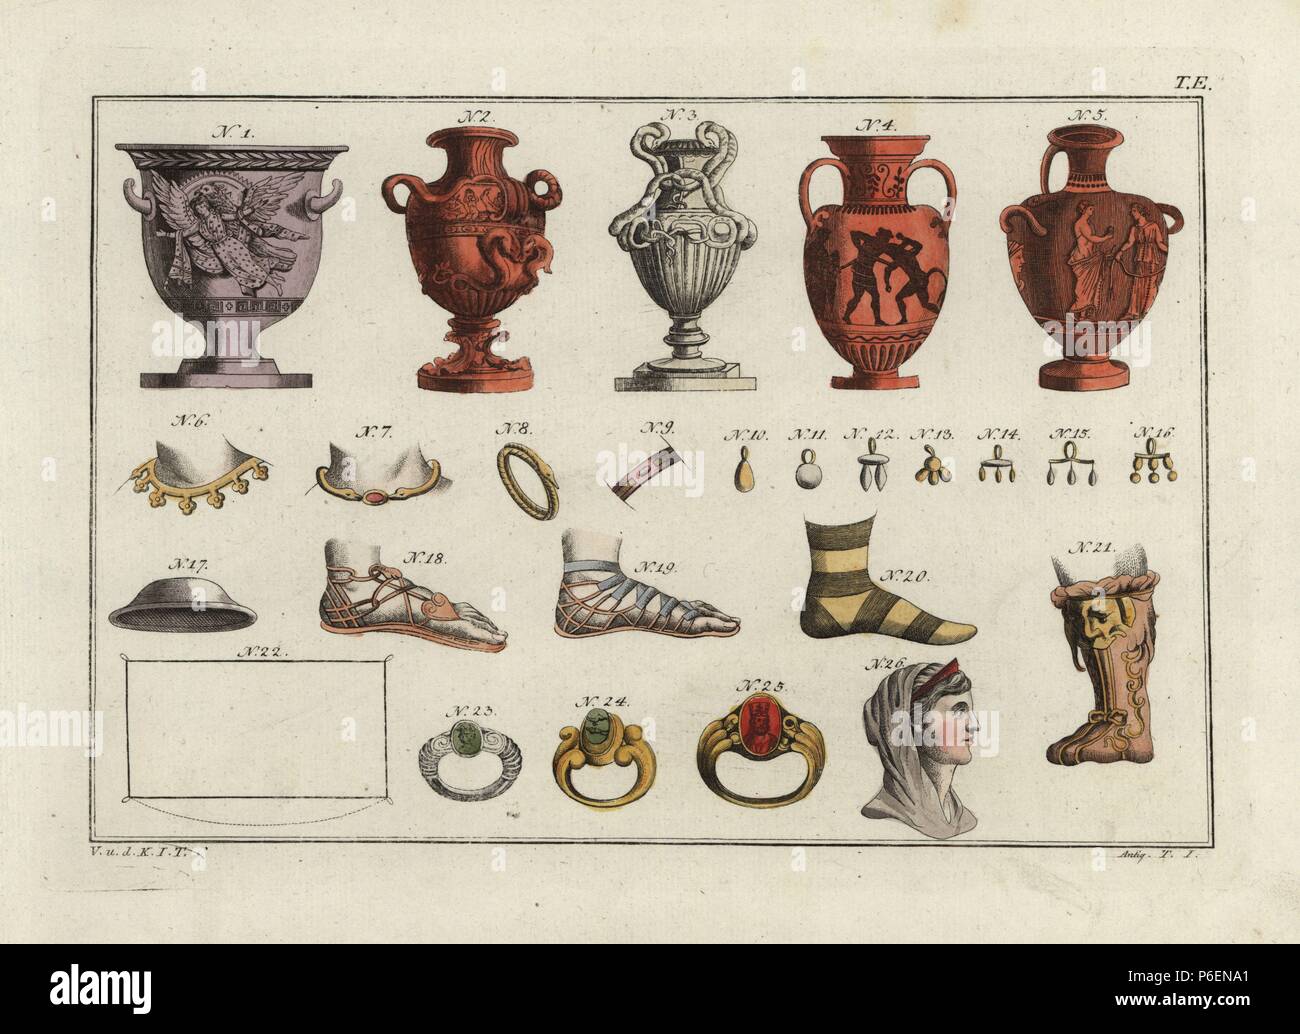 Vasi greci (1-5), le donne collane (6,7), bracciali (8, 9), e orecchini  (10-16); sandali (18-19), scarpe (20-21), il pallio (22), gli anelli  (23-25) ed il busto di regina greca (26). Thessalian hat (